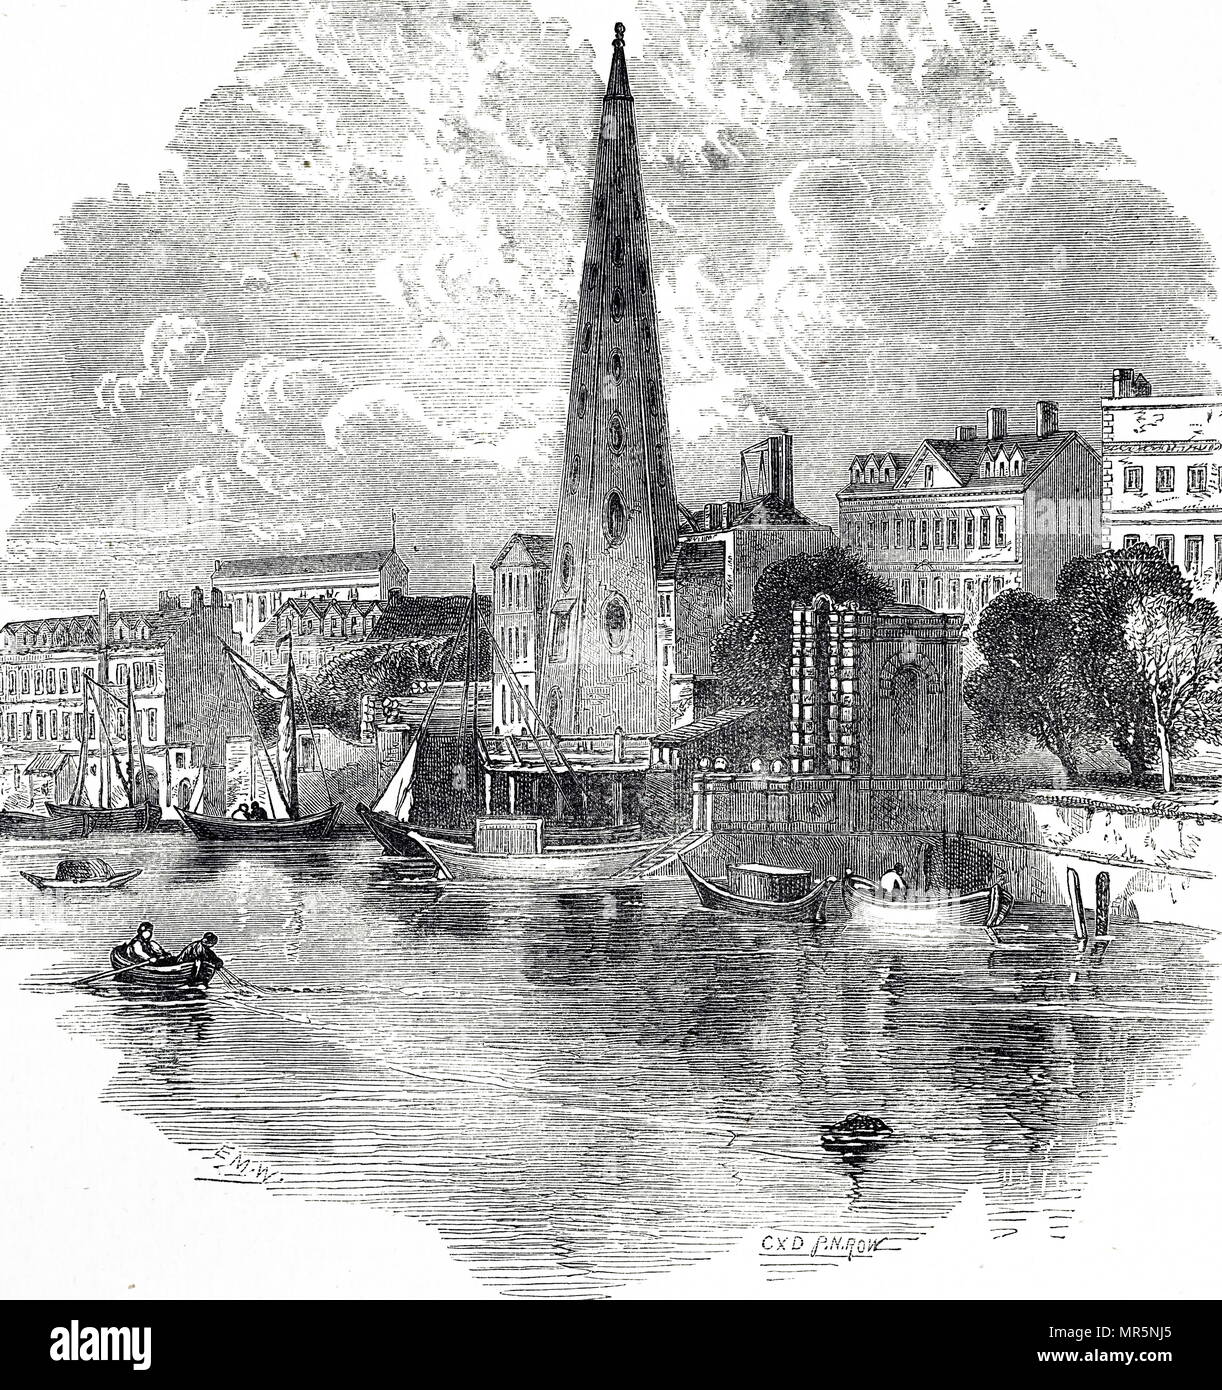 Kupferstich mit der Darstellung der wasserwerke von York während des späten 18. Jahrhunderts. Vom 19. Jahrhundert Stockfoto